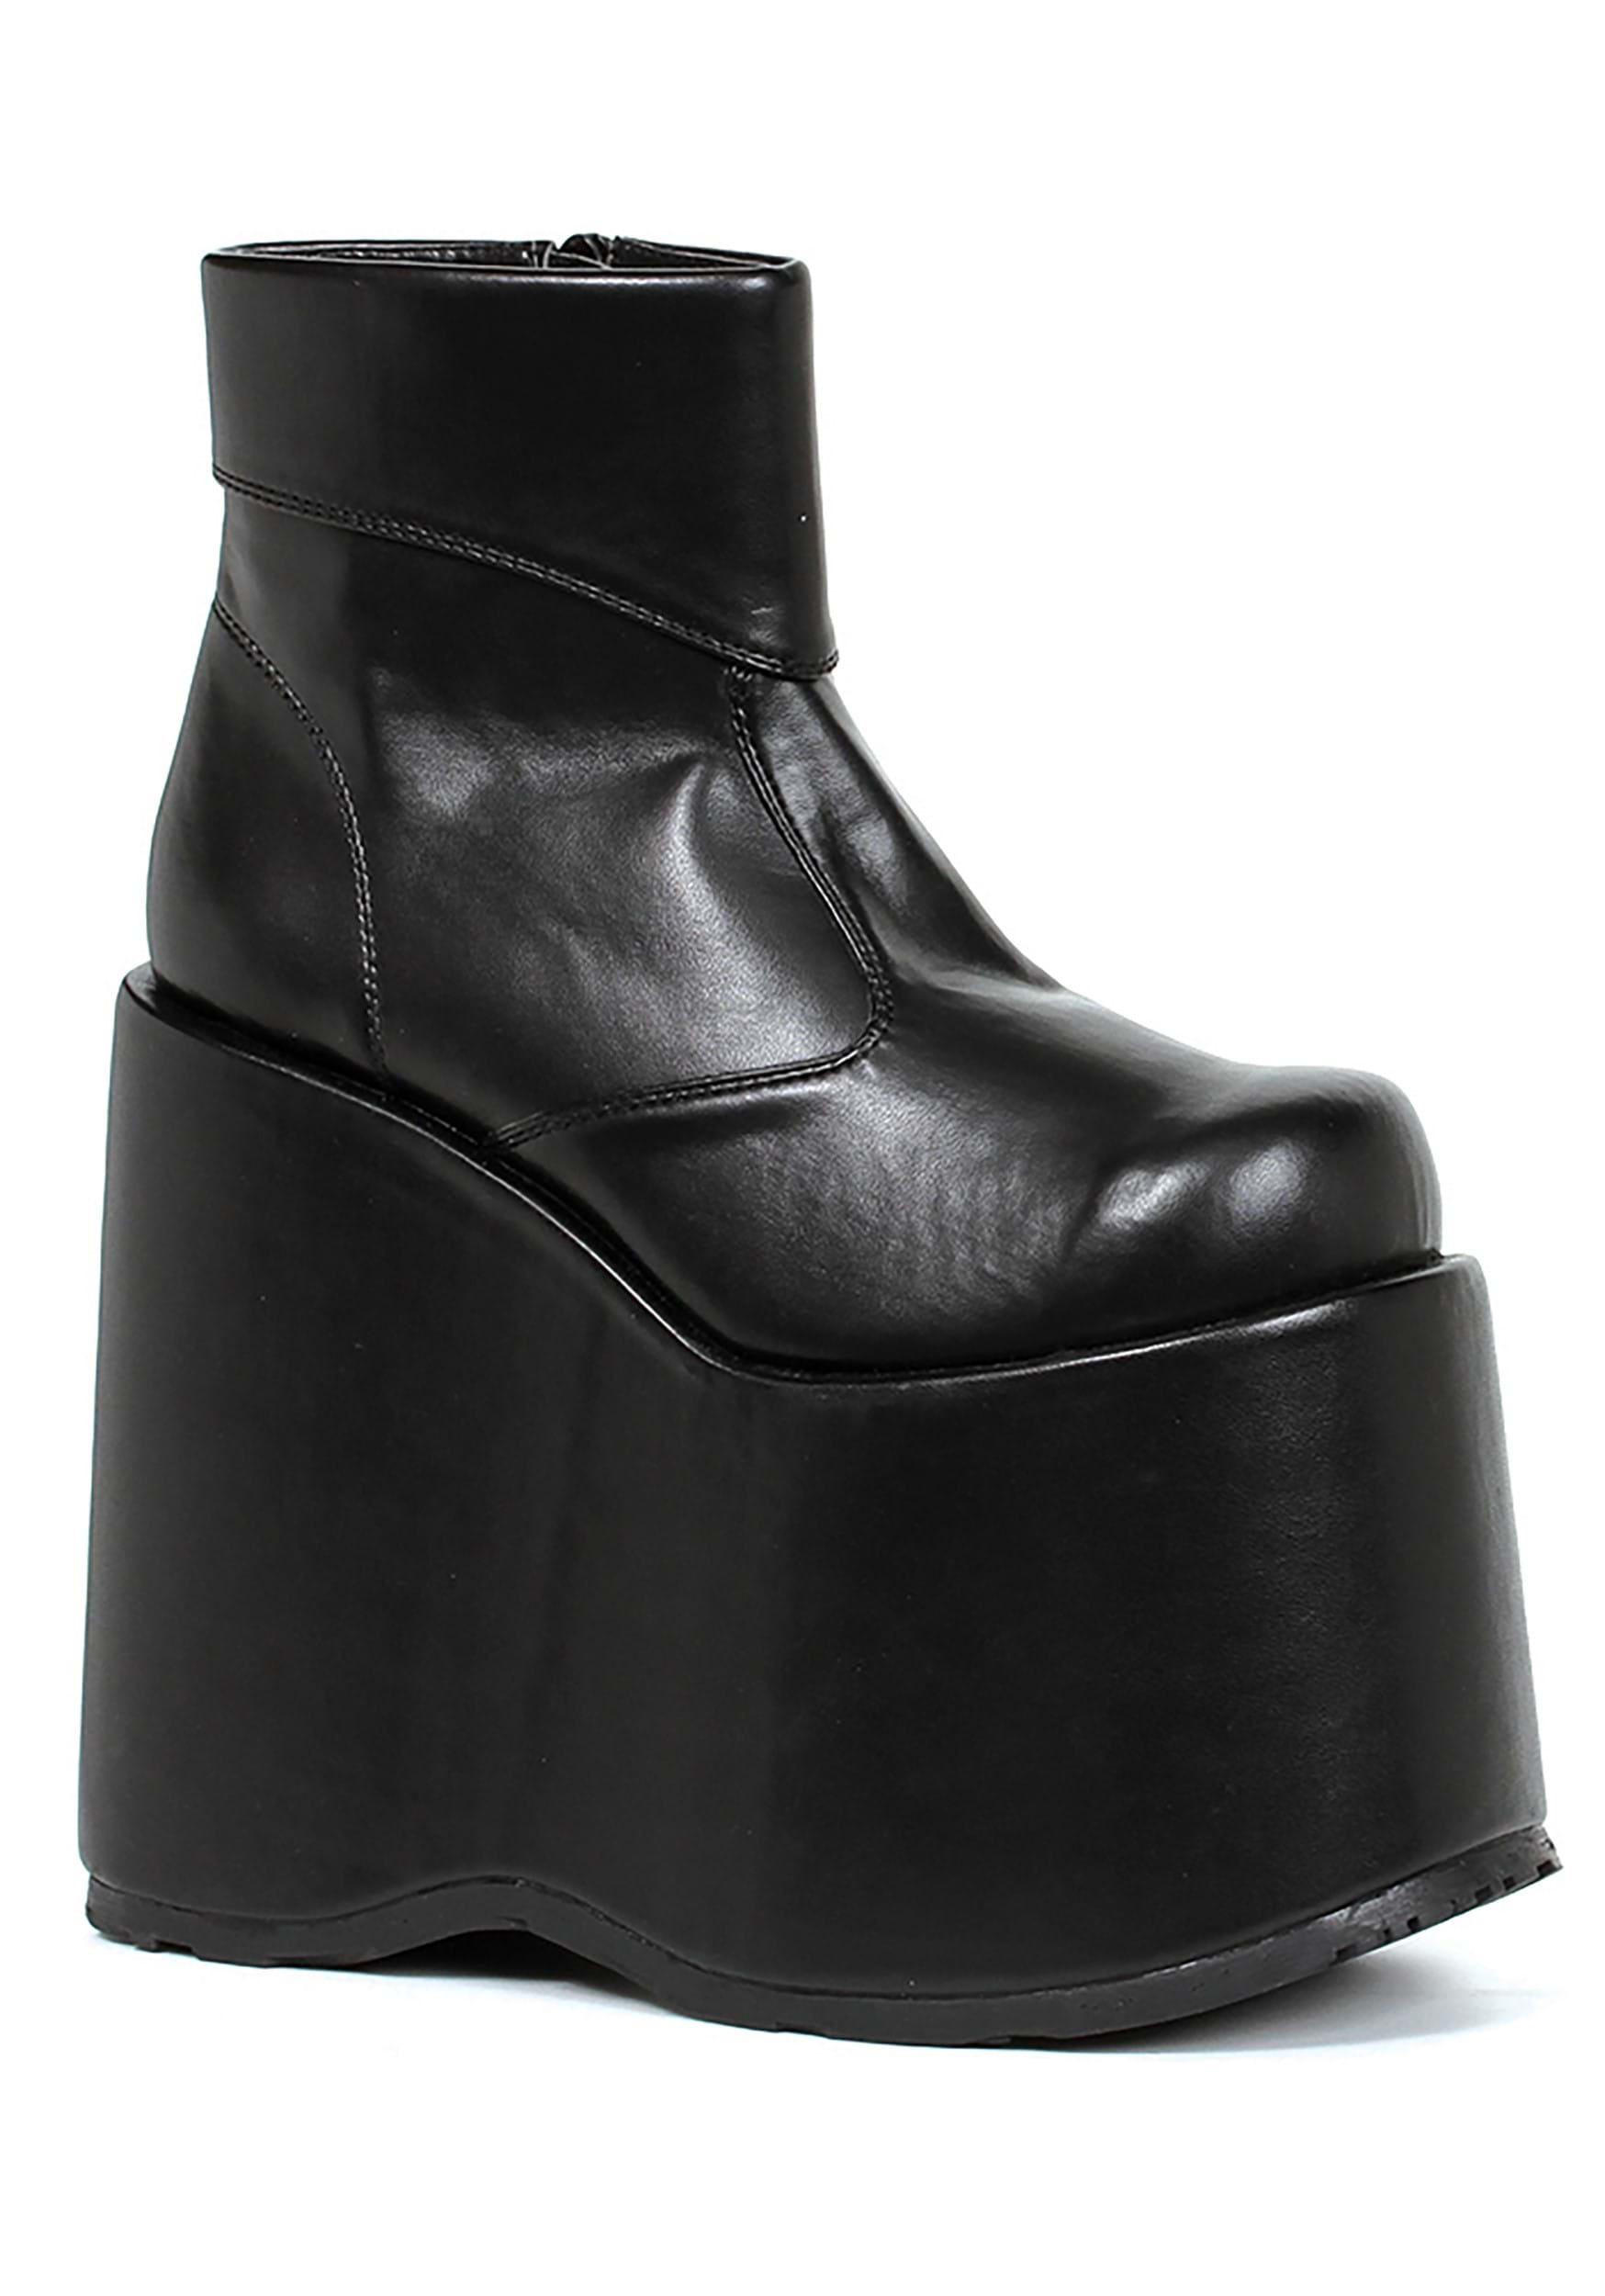 Image of Black Monster Platform Men's Shoes ID EE500FRANKBK-M